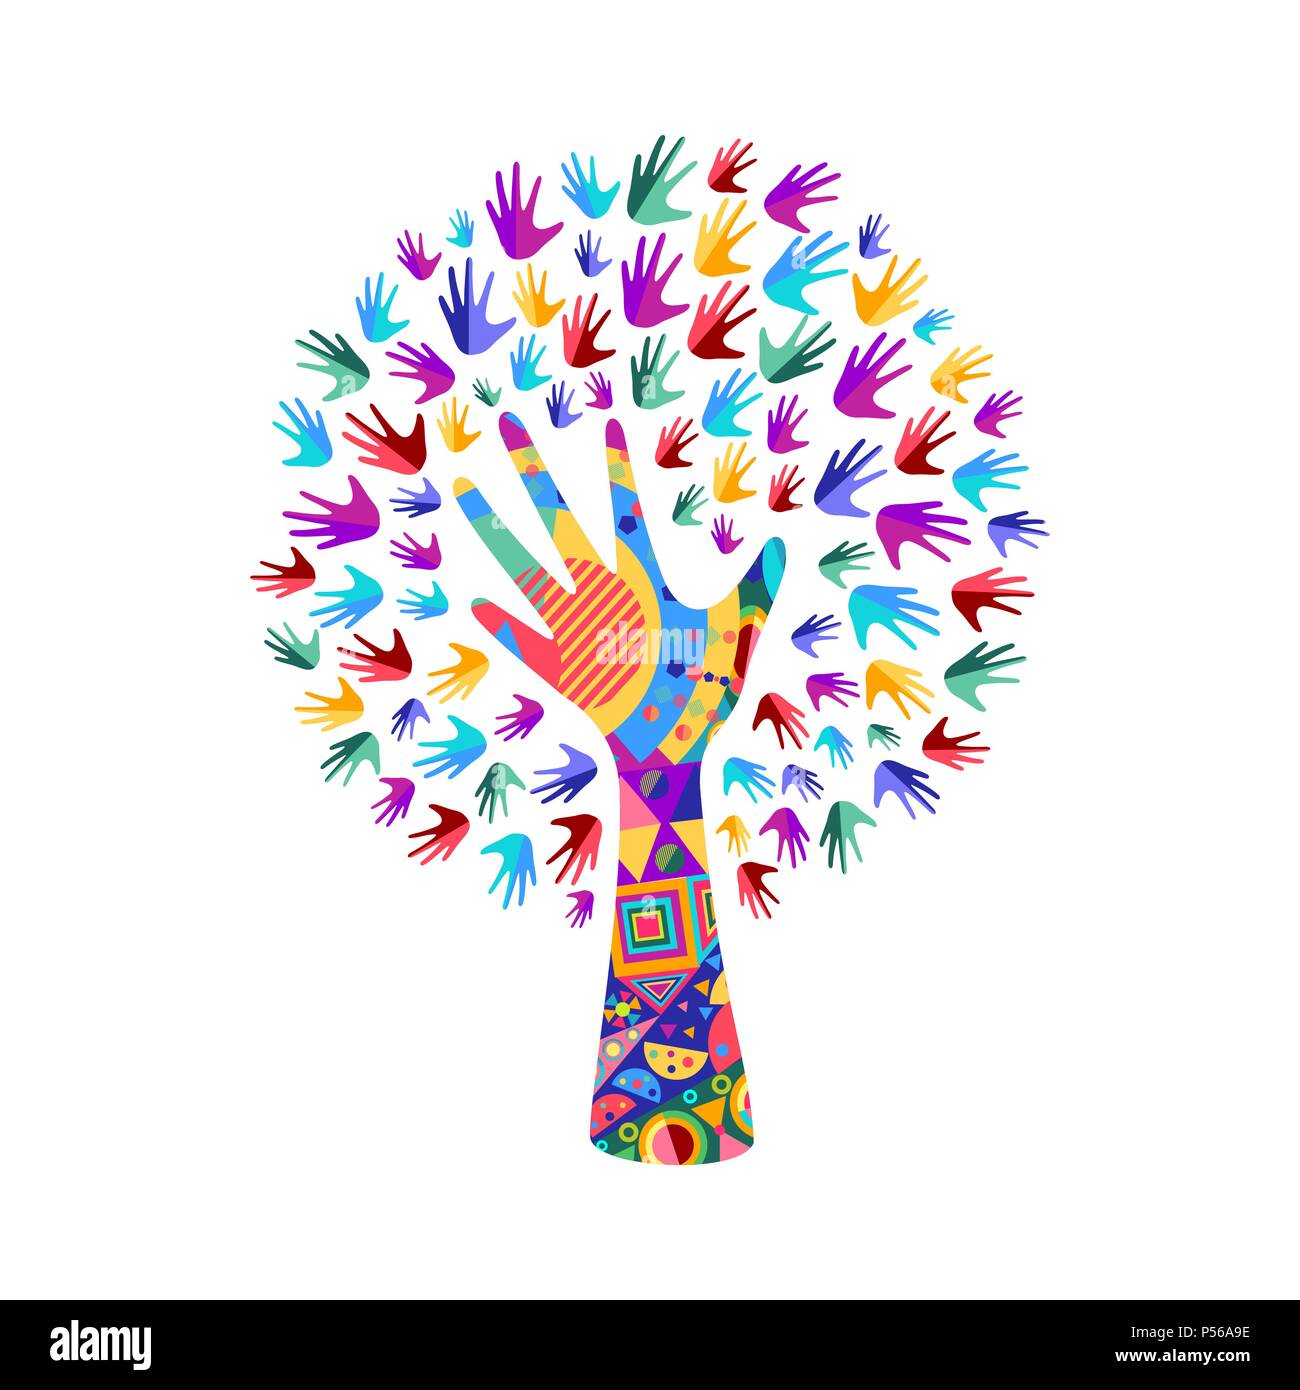 Baum Symbol Mit Bunten Menschlichen Handen Konzept Abbildung Fur Die Organisation Zu Helfen Umwelt Projekt Oder Soziale Arbeit Eps 10 Vektor Stock Vektorgrafik Alamy